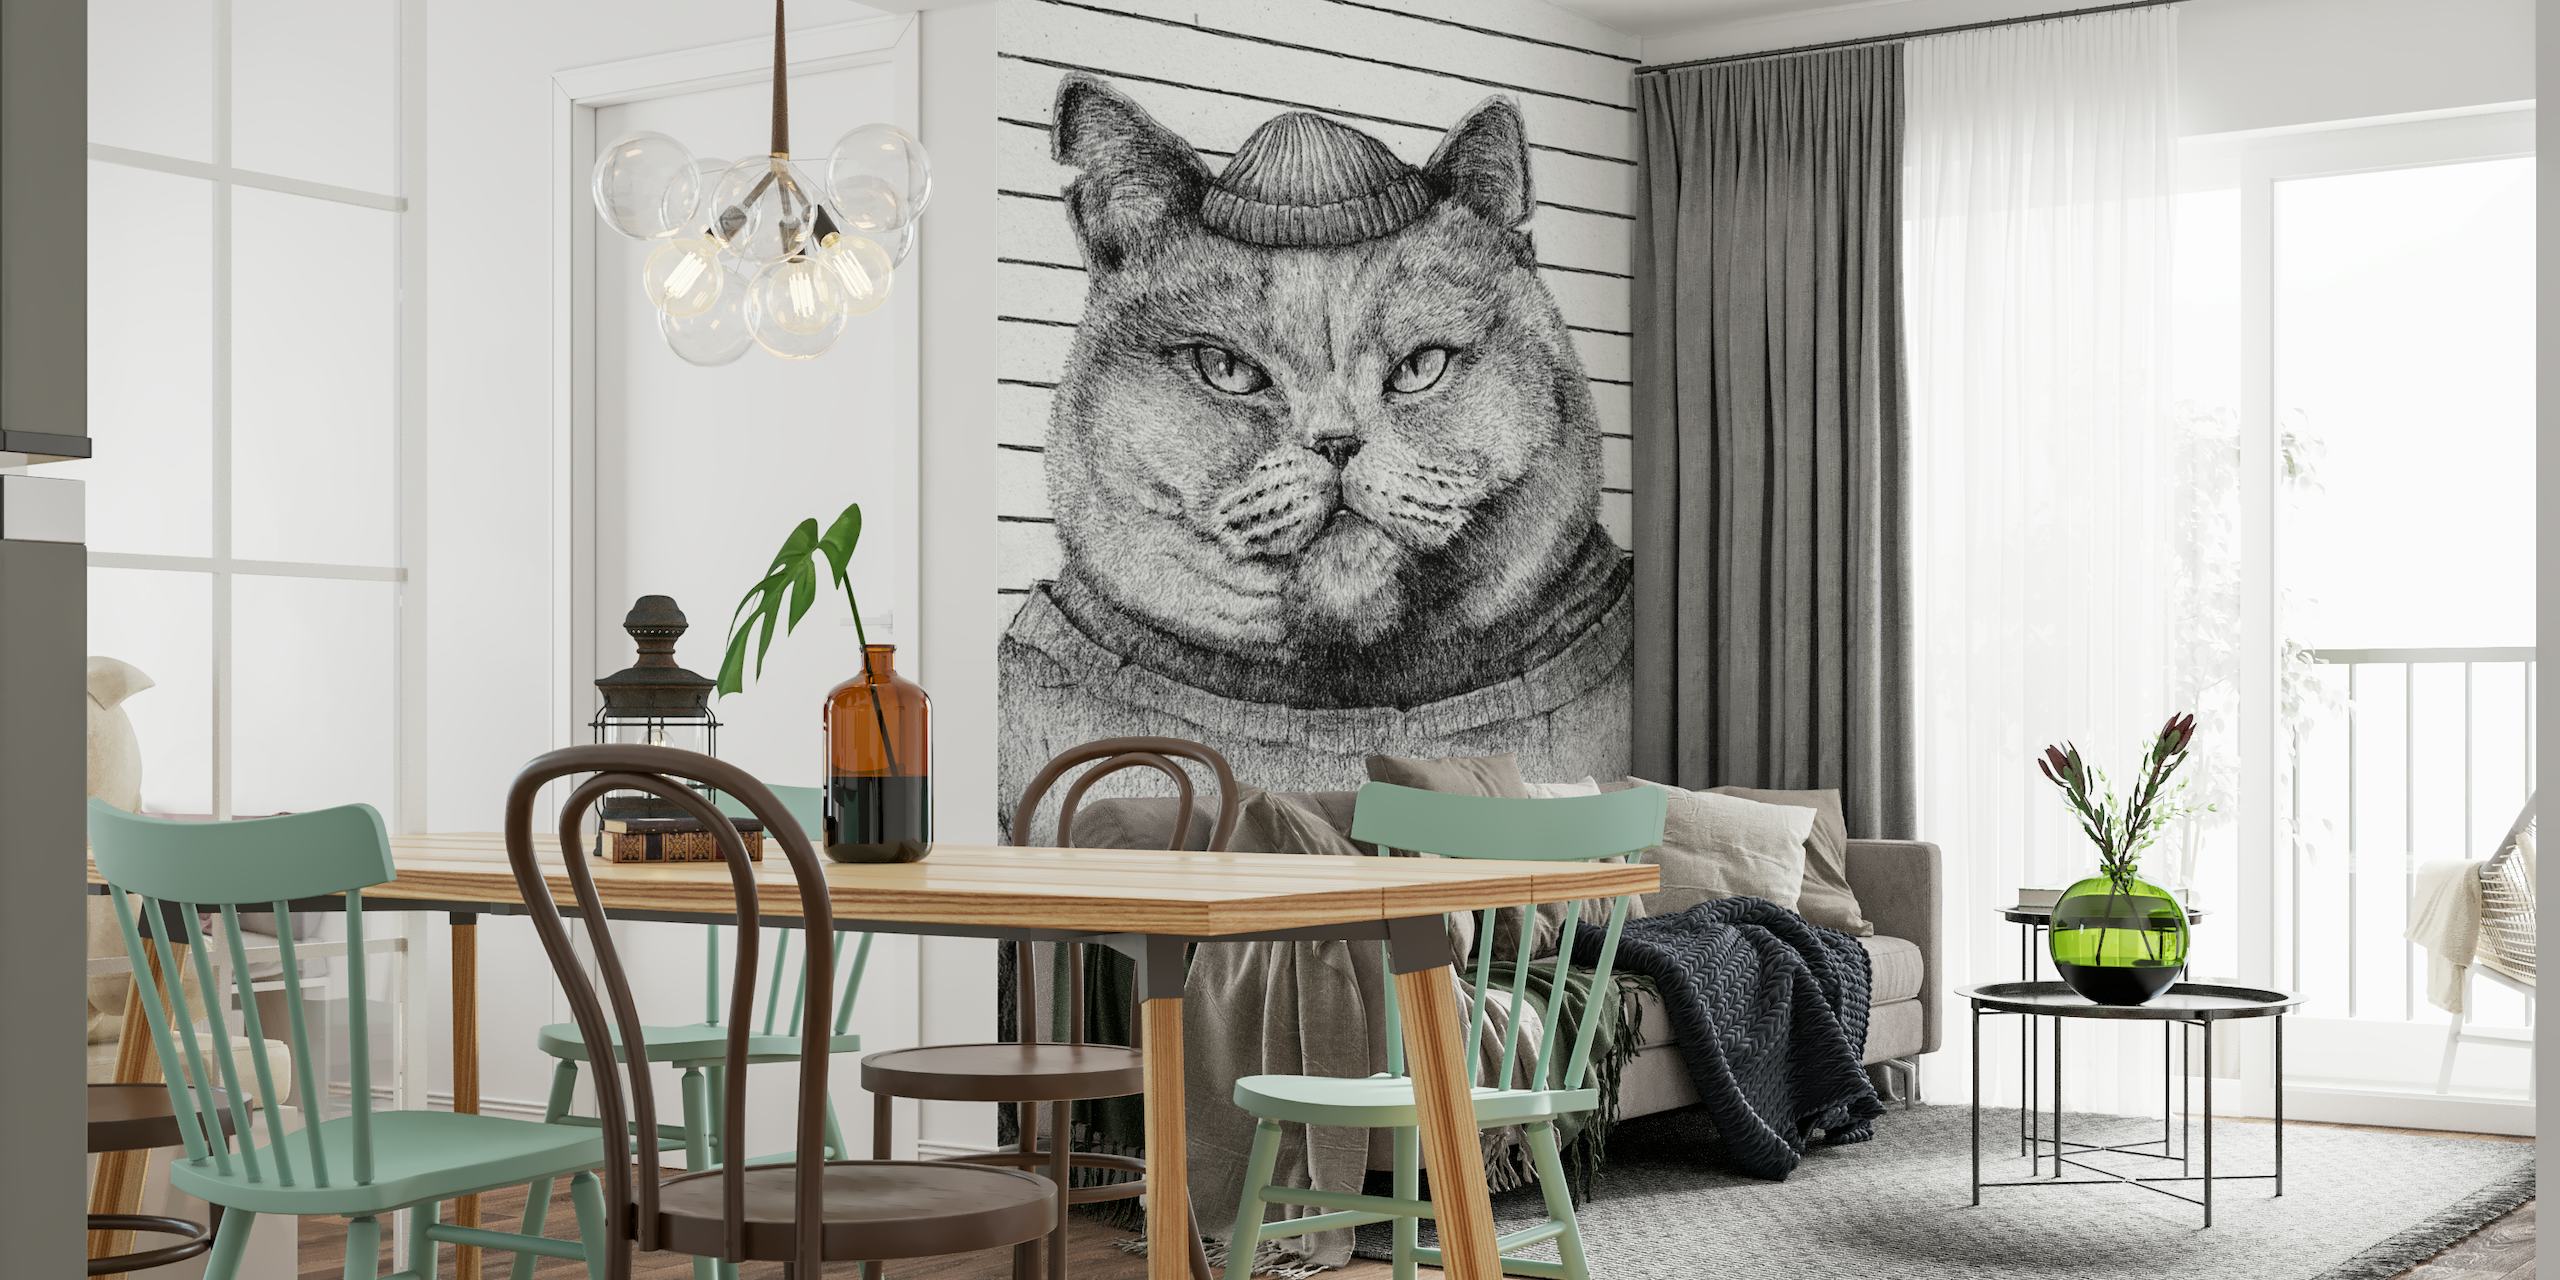 Brittiläinen bandit-kissa varasasussa seinämaalaus